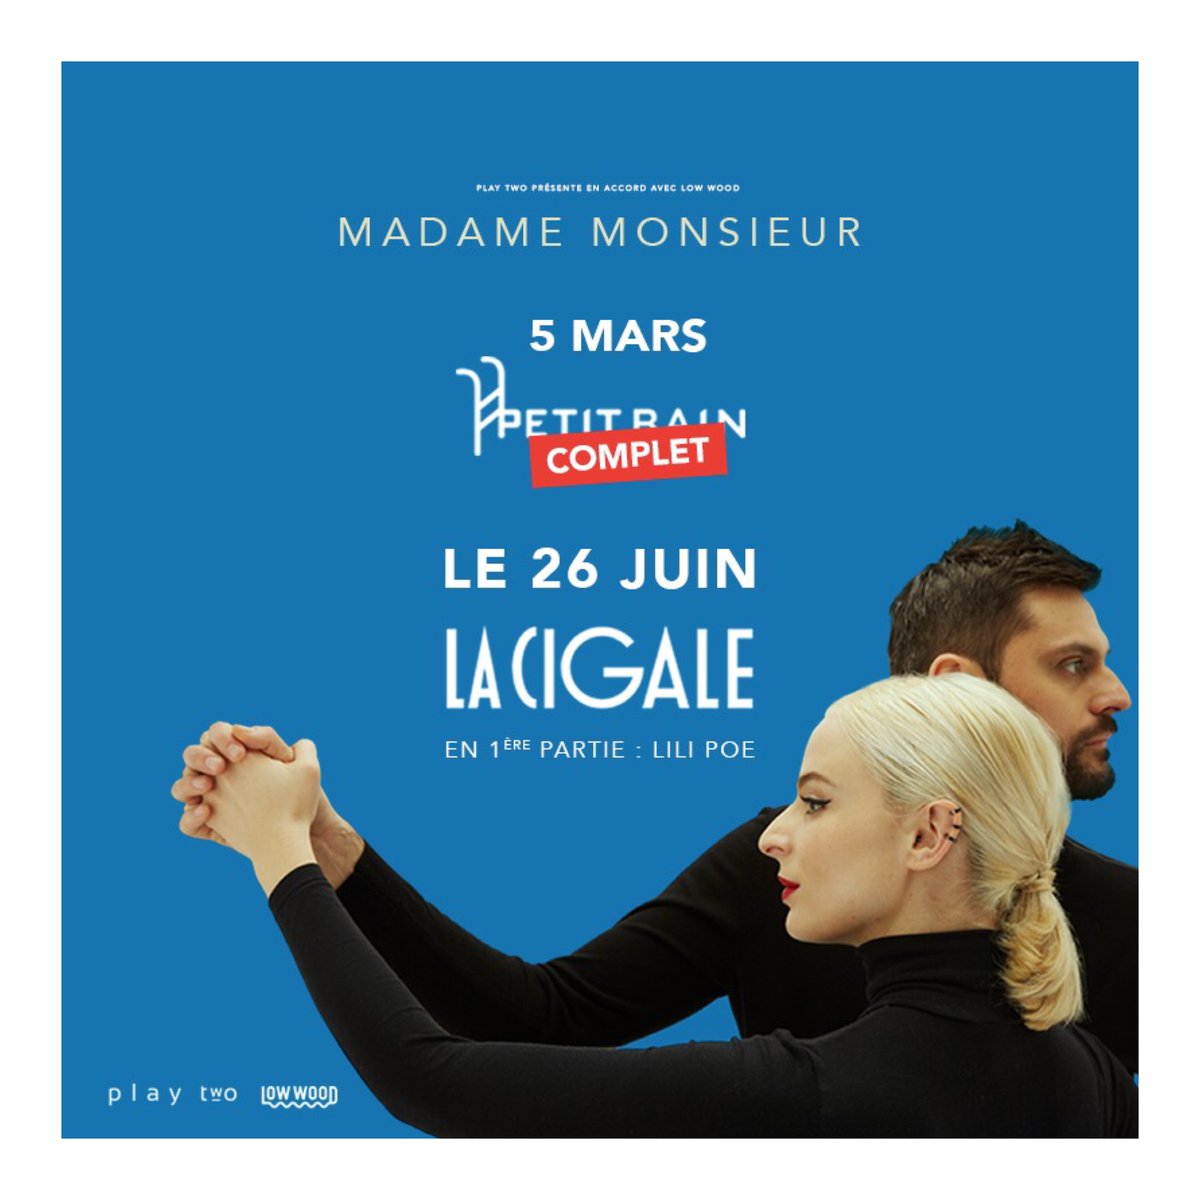 Madame Monsieur à la Cigale (Paris - 2018)